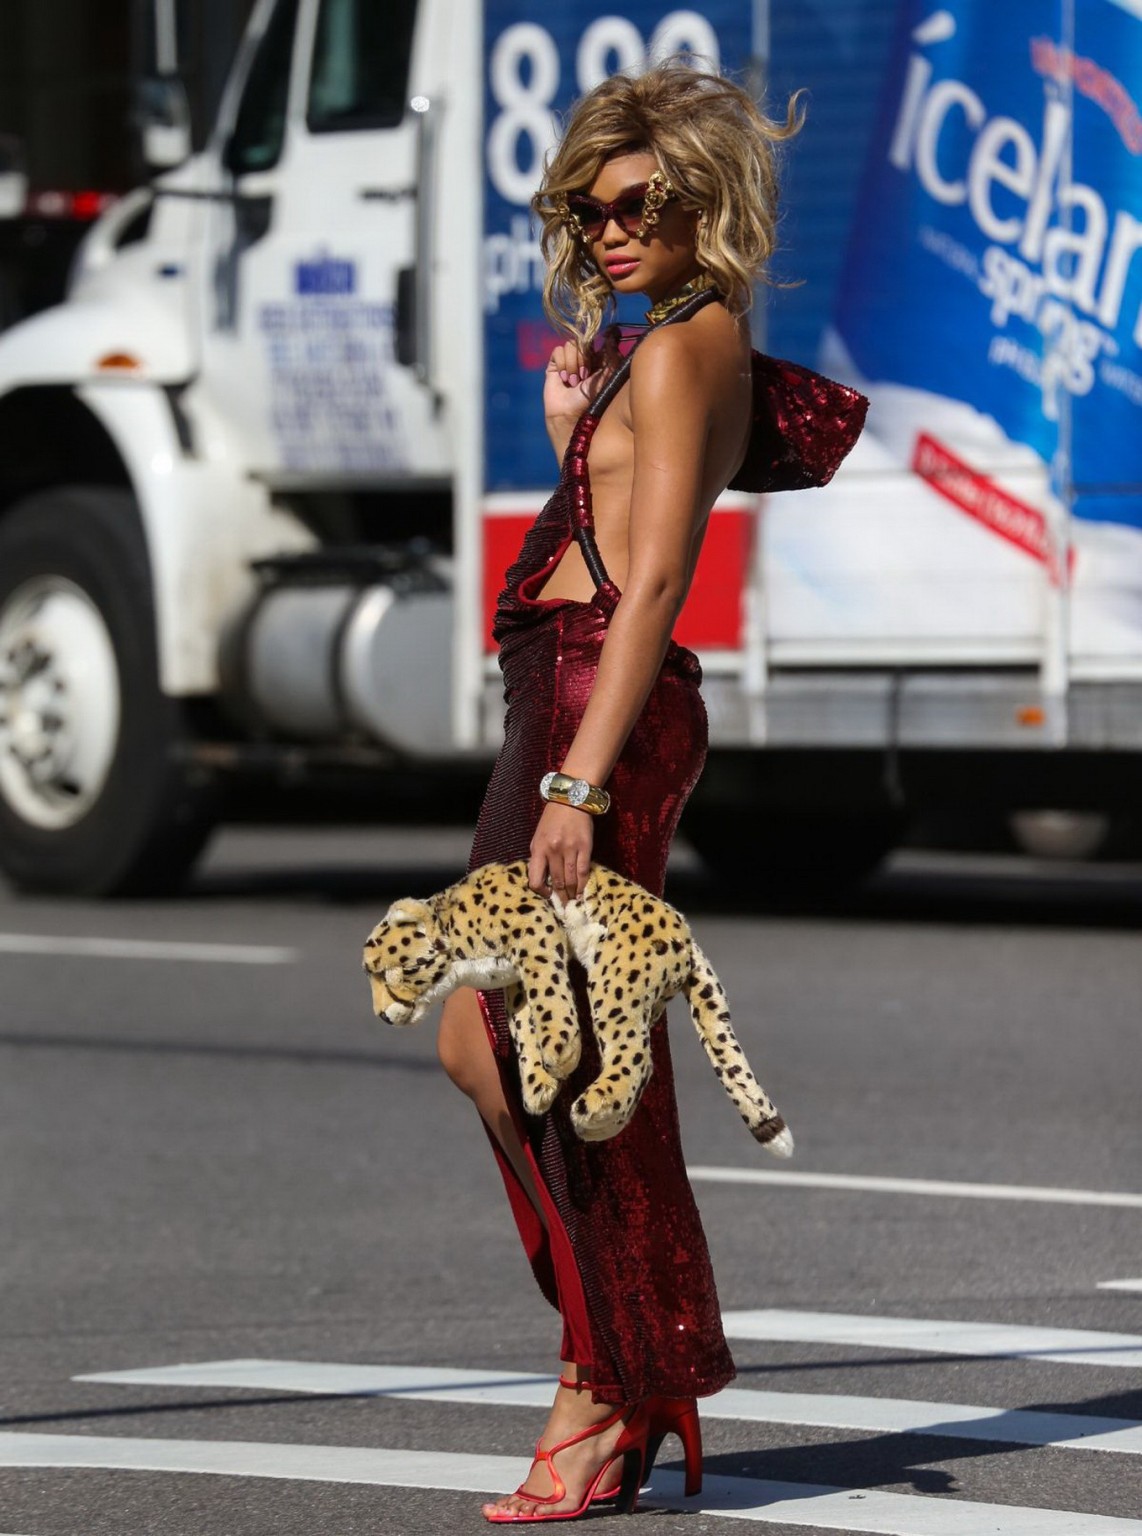 Chanel iman che mostra sideboob e leggy ad un photoshoot sulla strada a new york
 #75195001